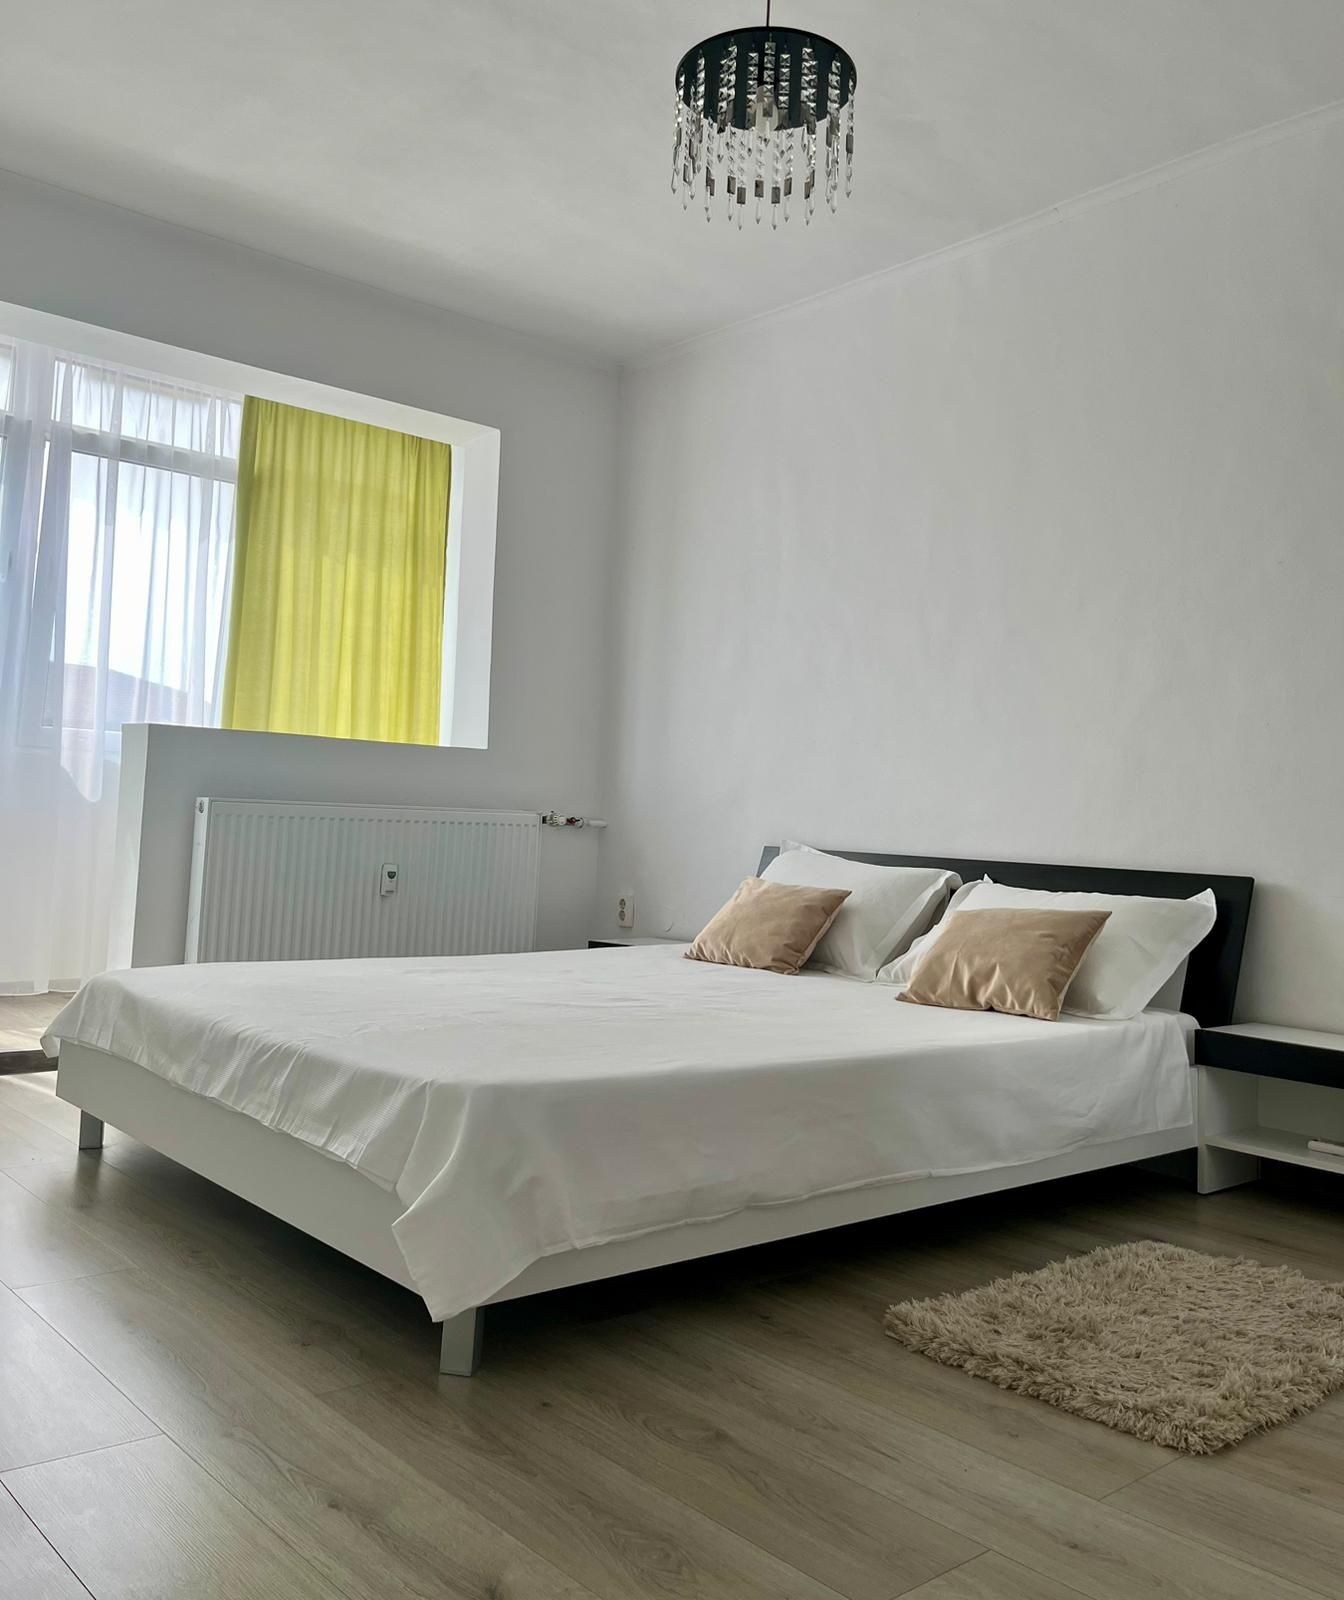 Apartament Regim Hotelier Nufărul - 2 dormitoare și living cu bucatari